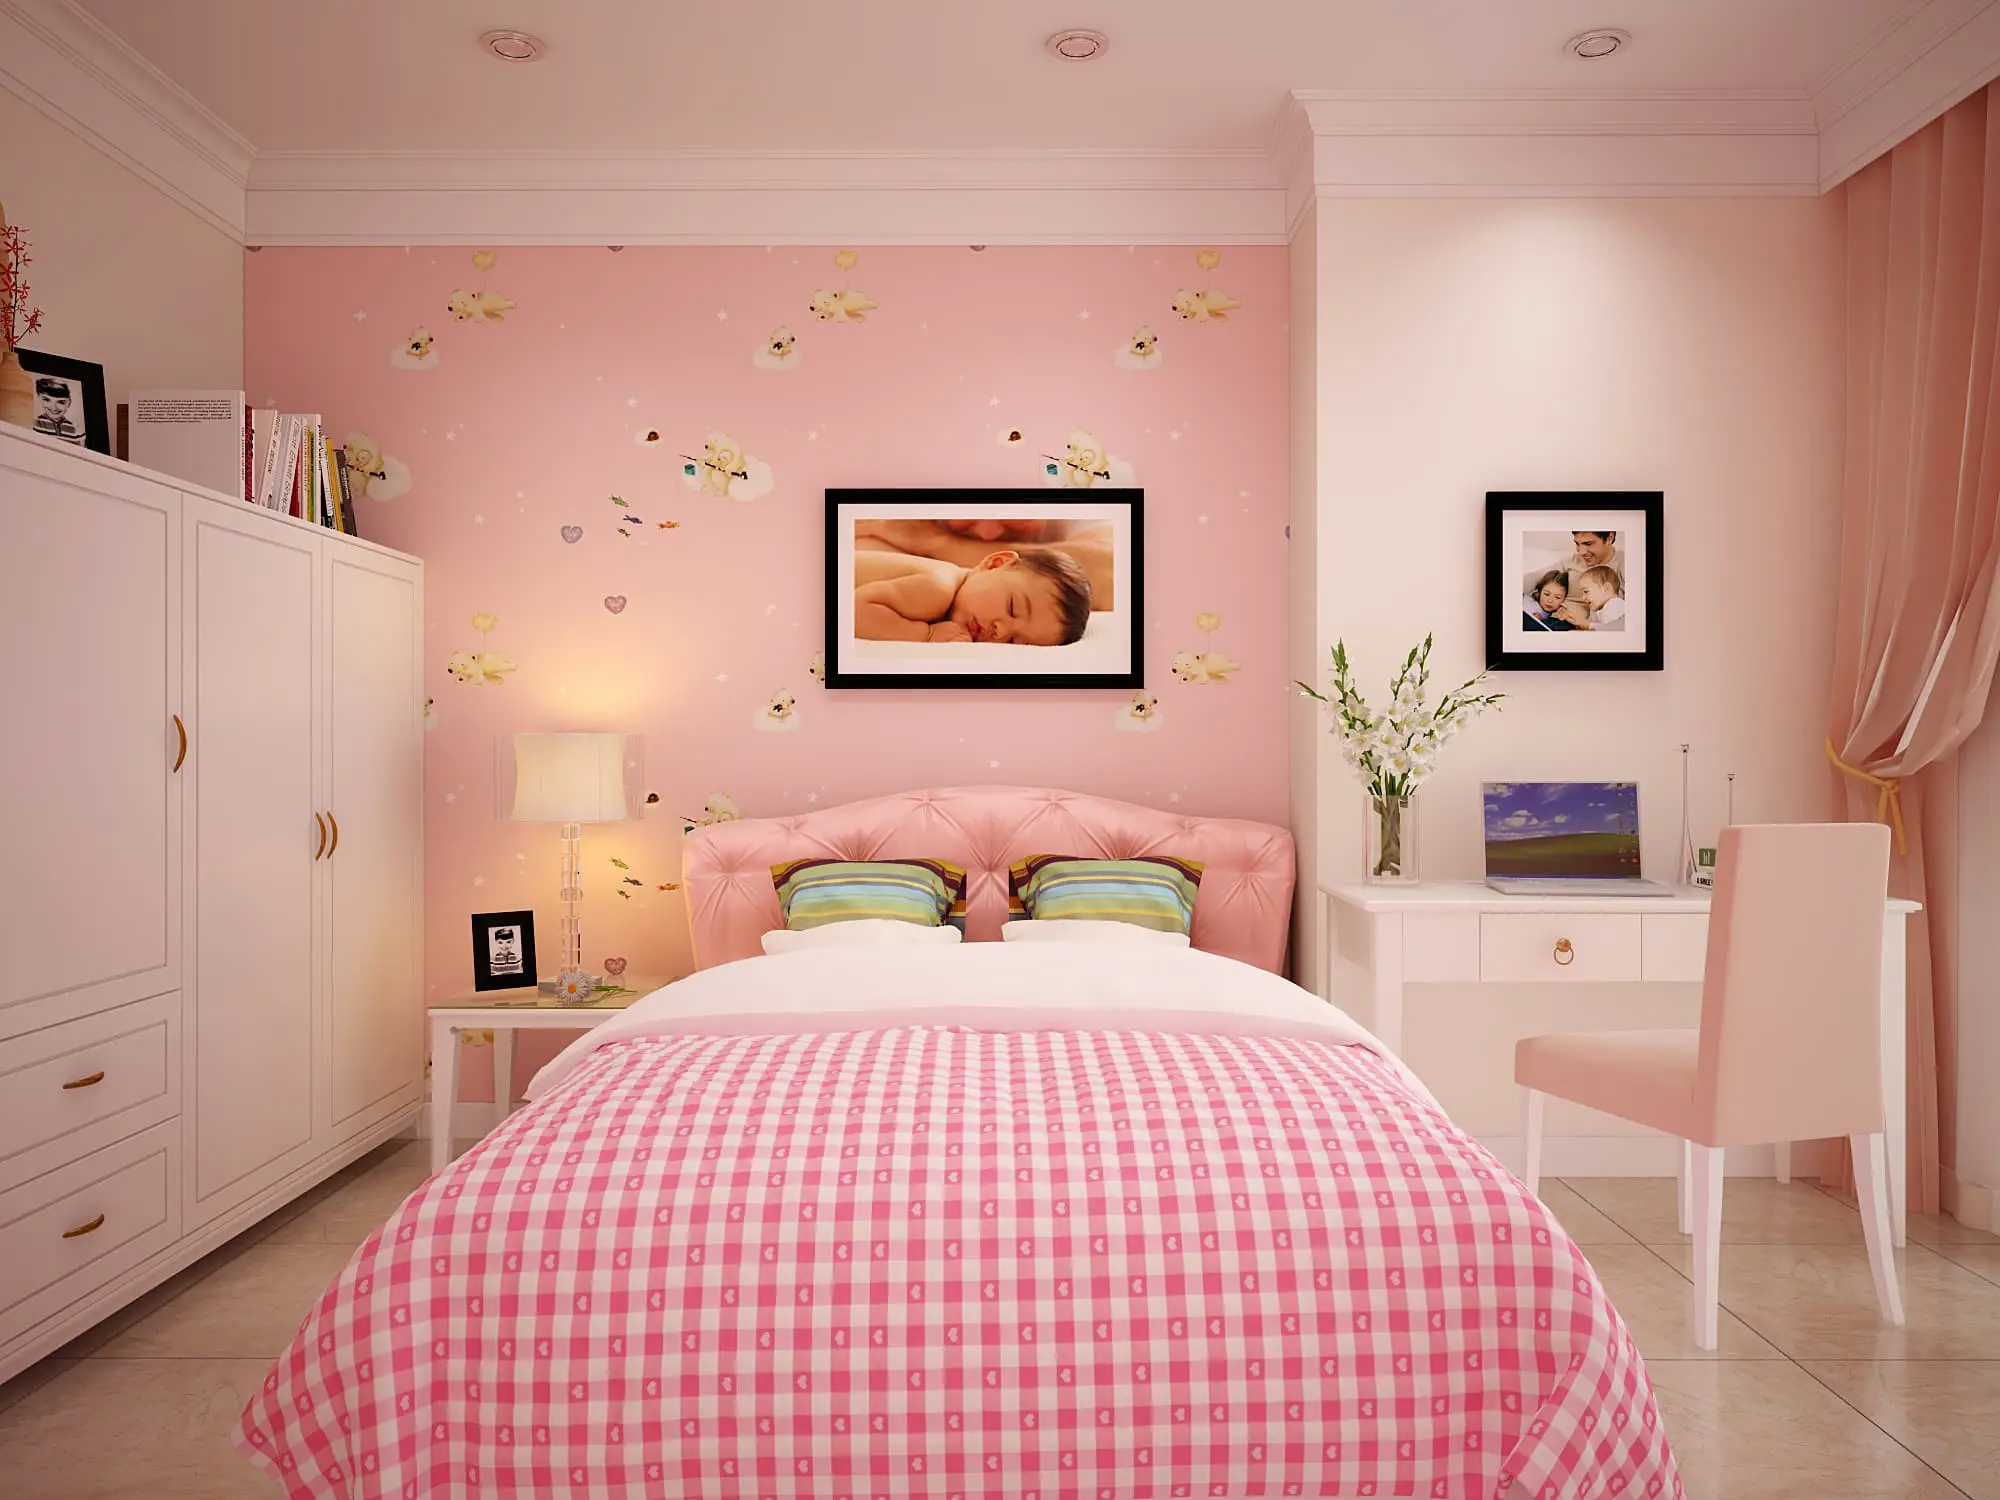 Tham khảo mẫu phòng ngủ đẹp cho nữ màu hồng